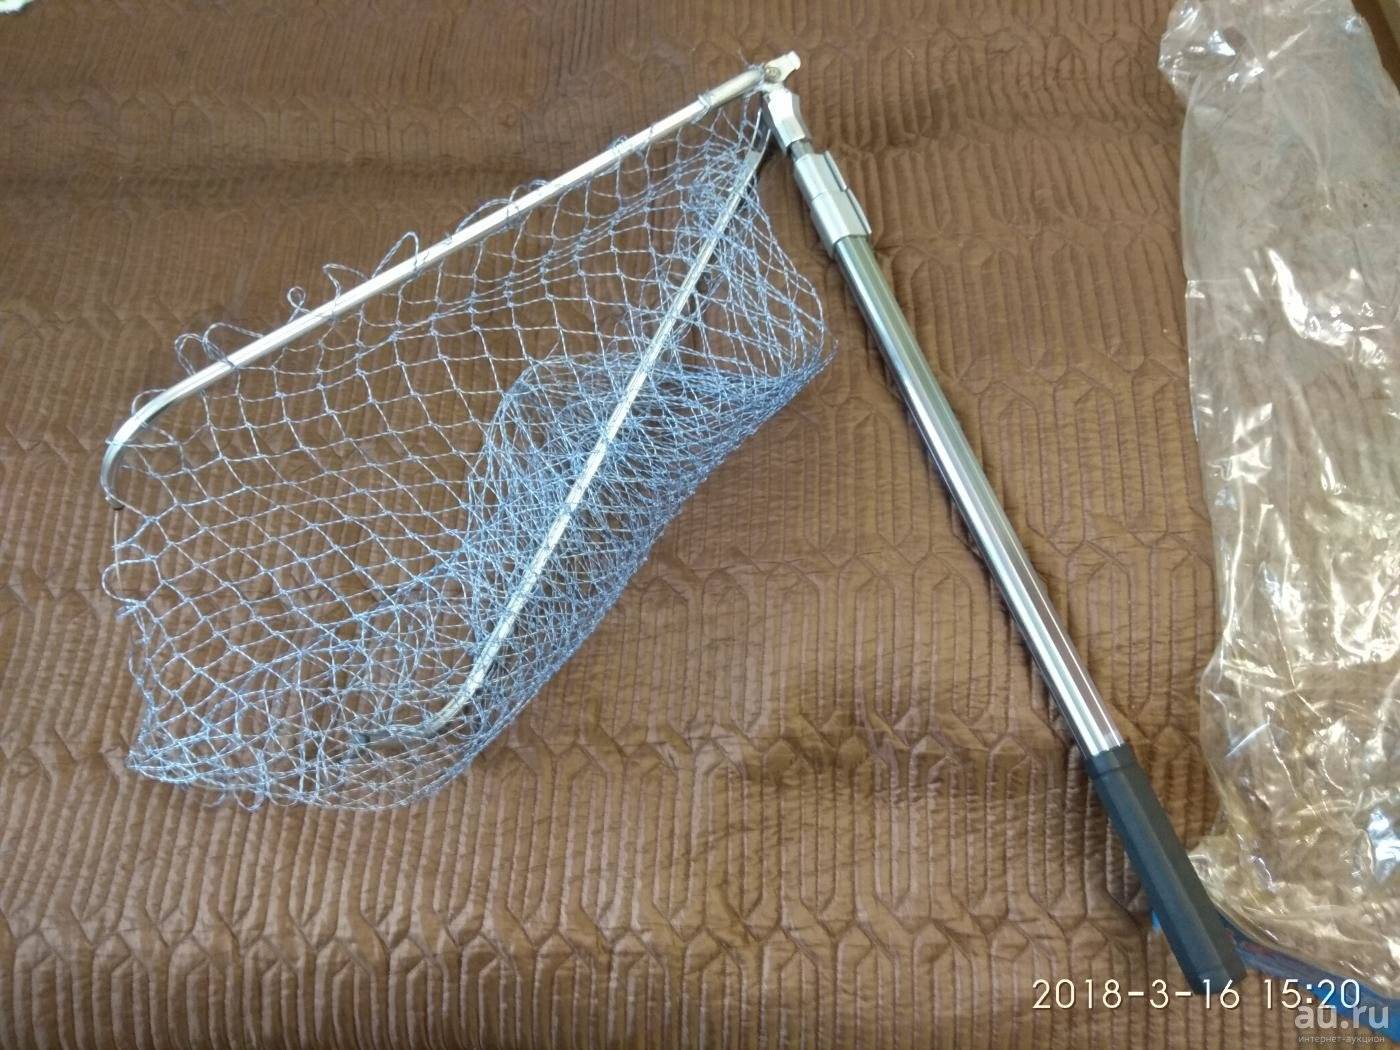 Как сделать сачок для рыбалки своими руками: материалы (фото + видео)